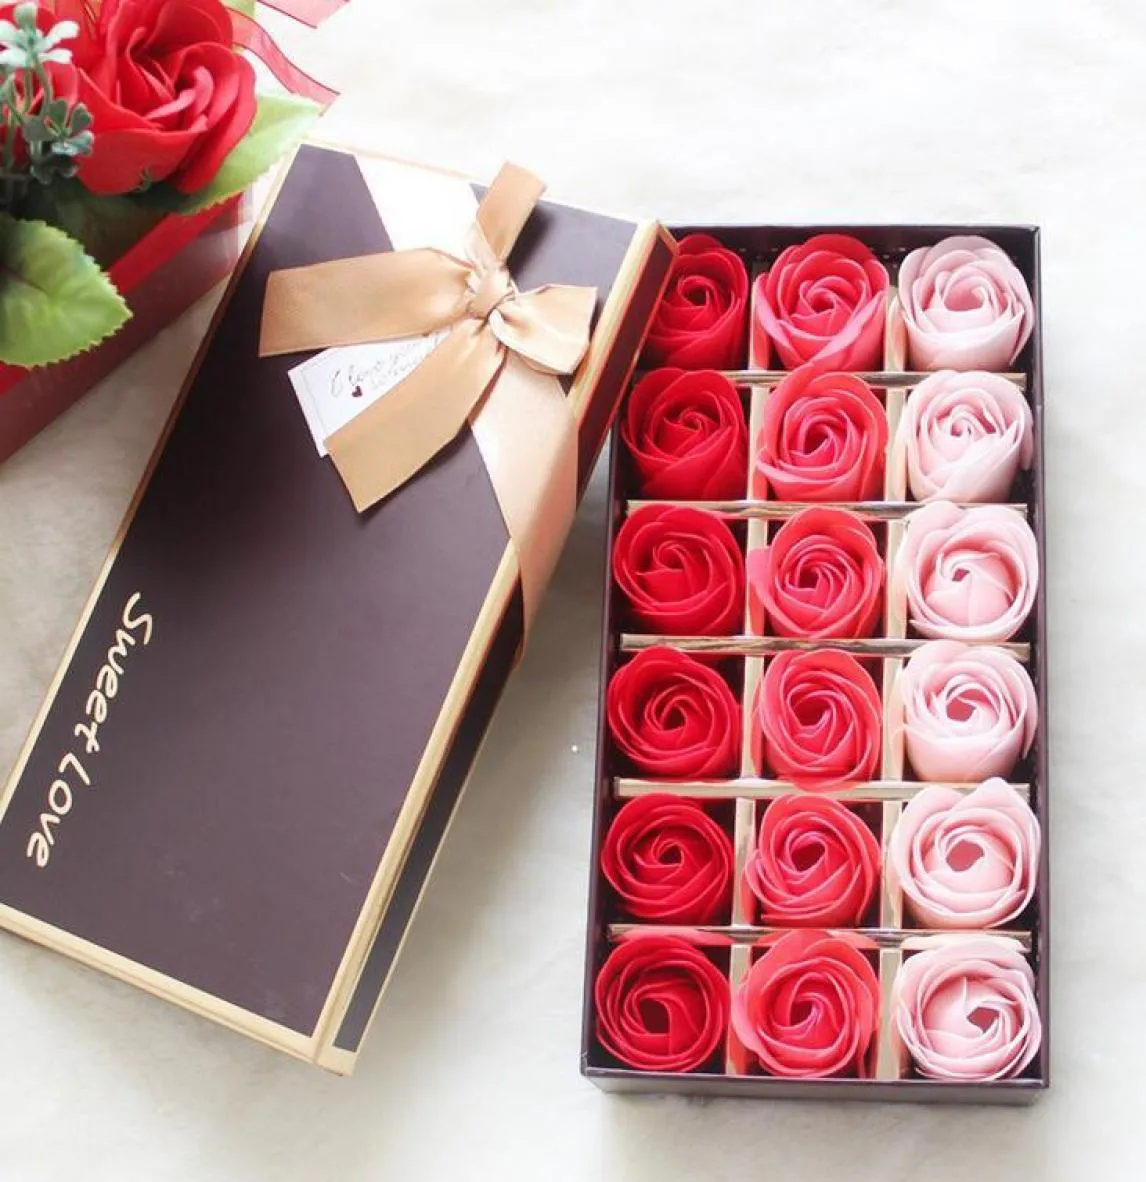 18pcs Soaps Rose Soaps Flower Emballé Supplies Cadeaux Événements Événements Bénéfices Favoris Savon Toilet ACCESSOIRES DE SALLE